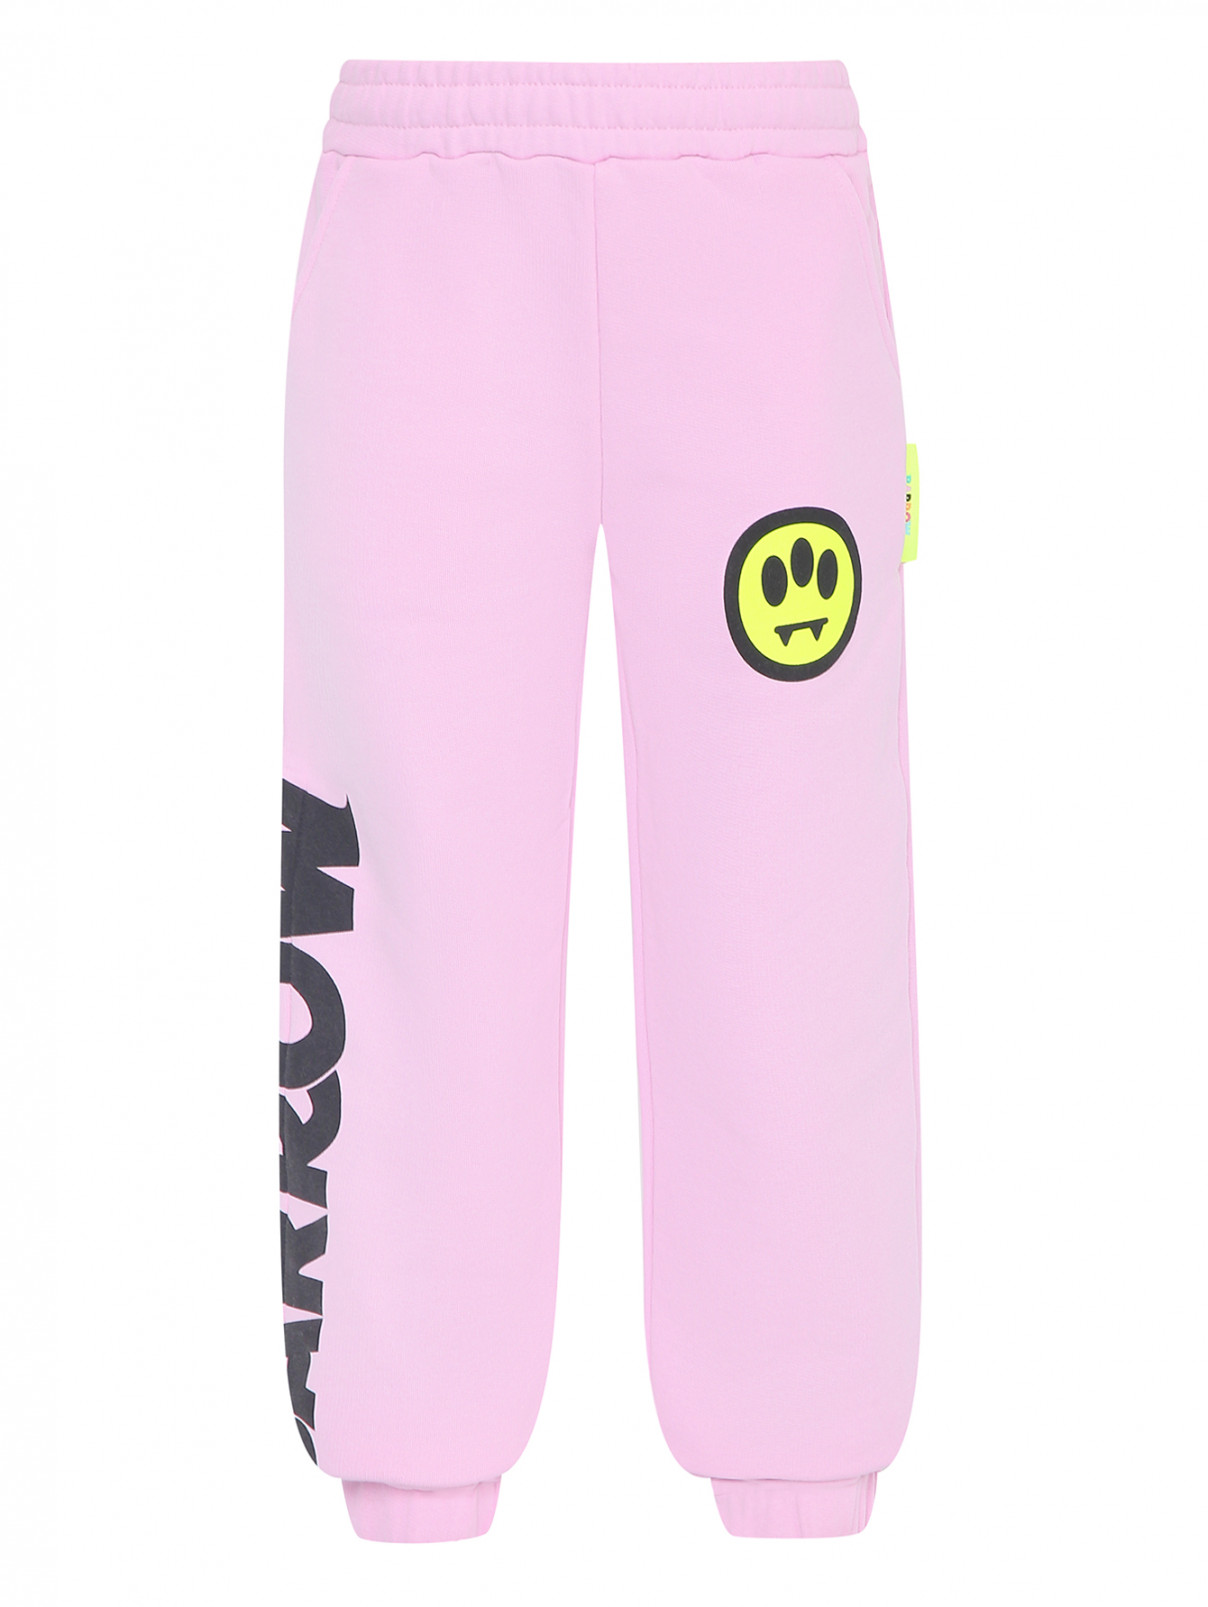 Трикотажные брюки с принтом Barrow Kids  –  Общий вид  – Цвет:  Розовый